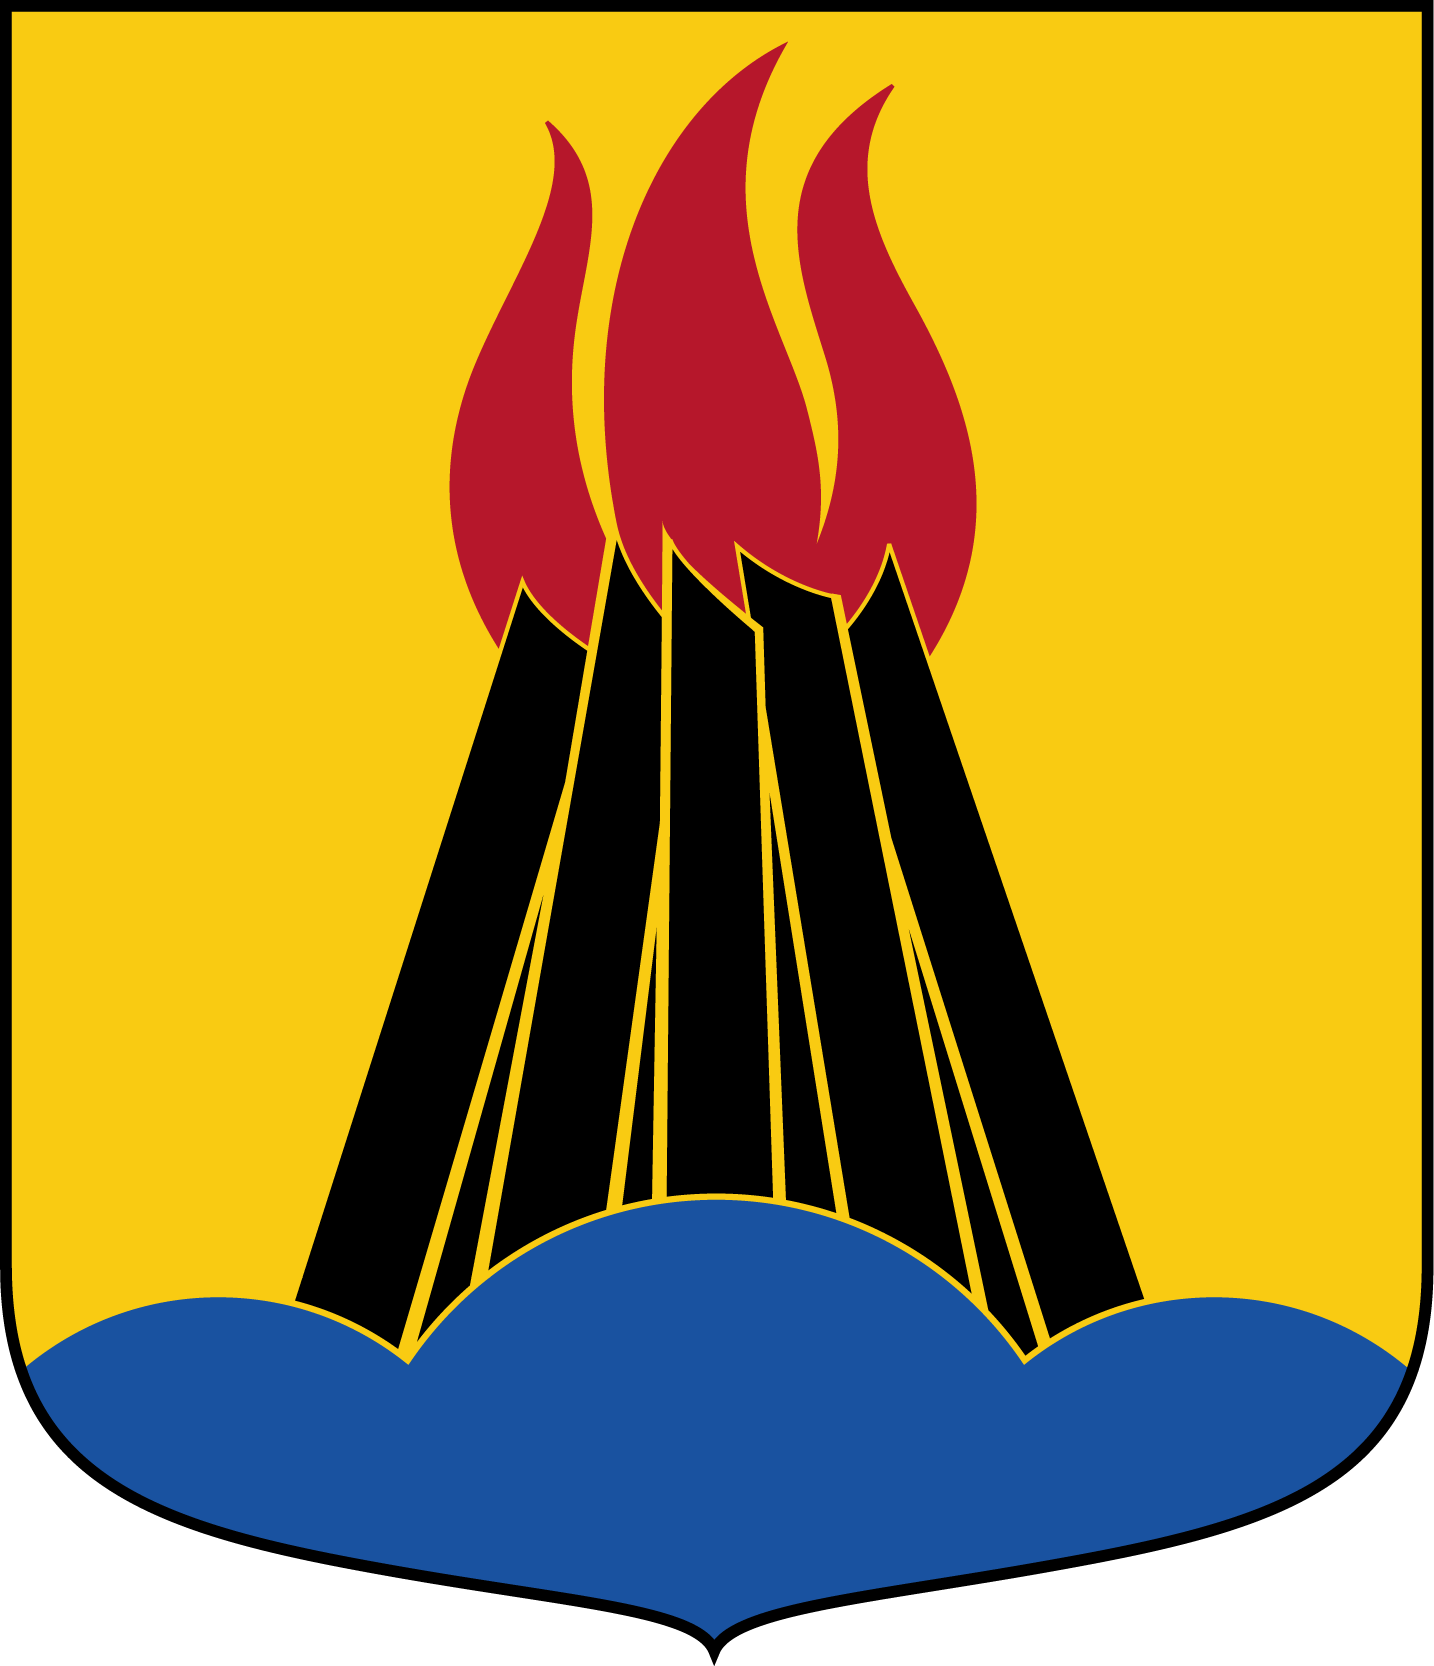 Hudinge kommun: I fält av guld en på ett blått treberg stående svart, brinnande vårdkase med röd låga.